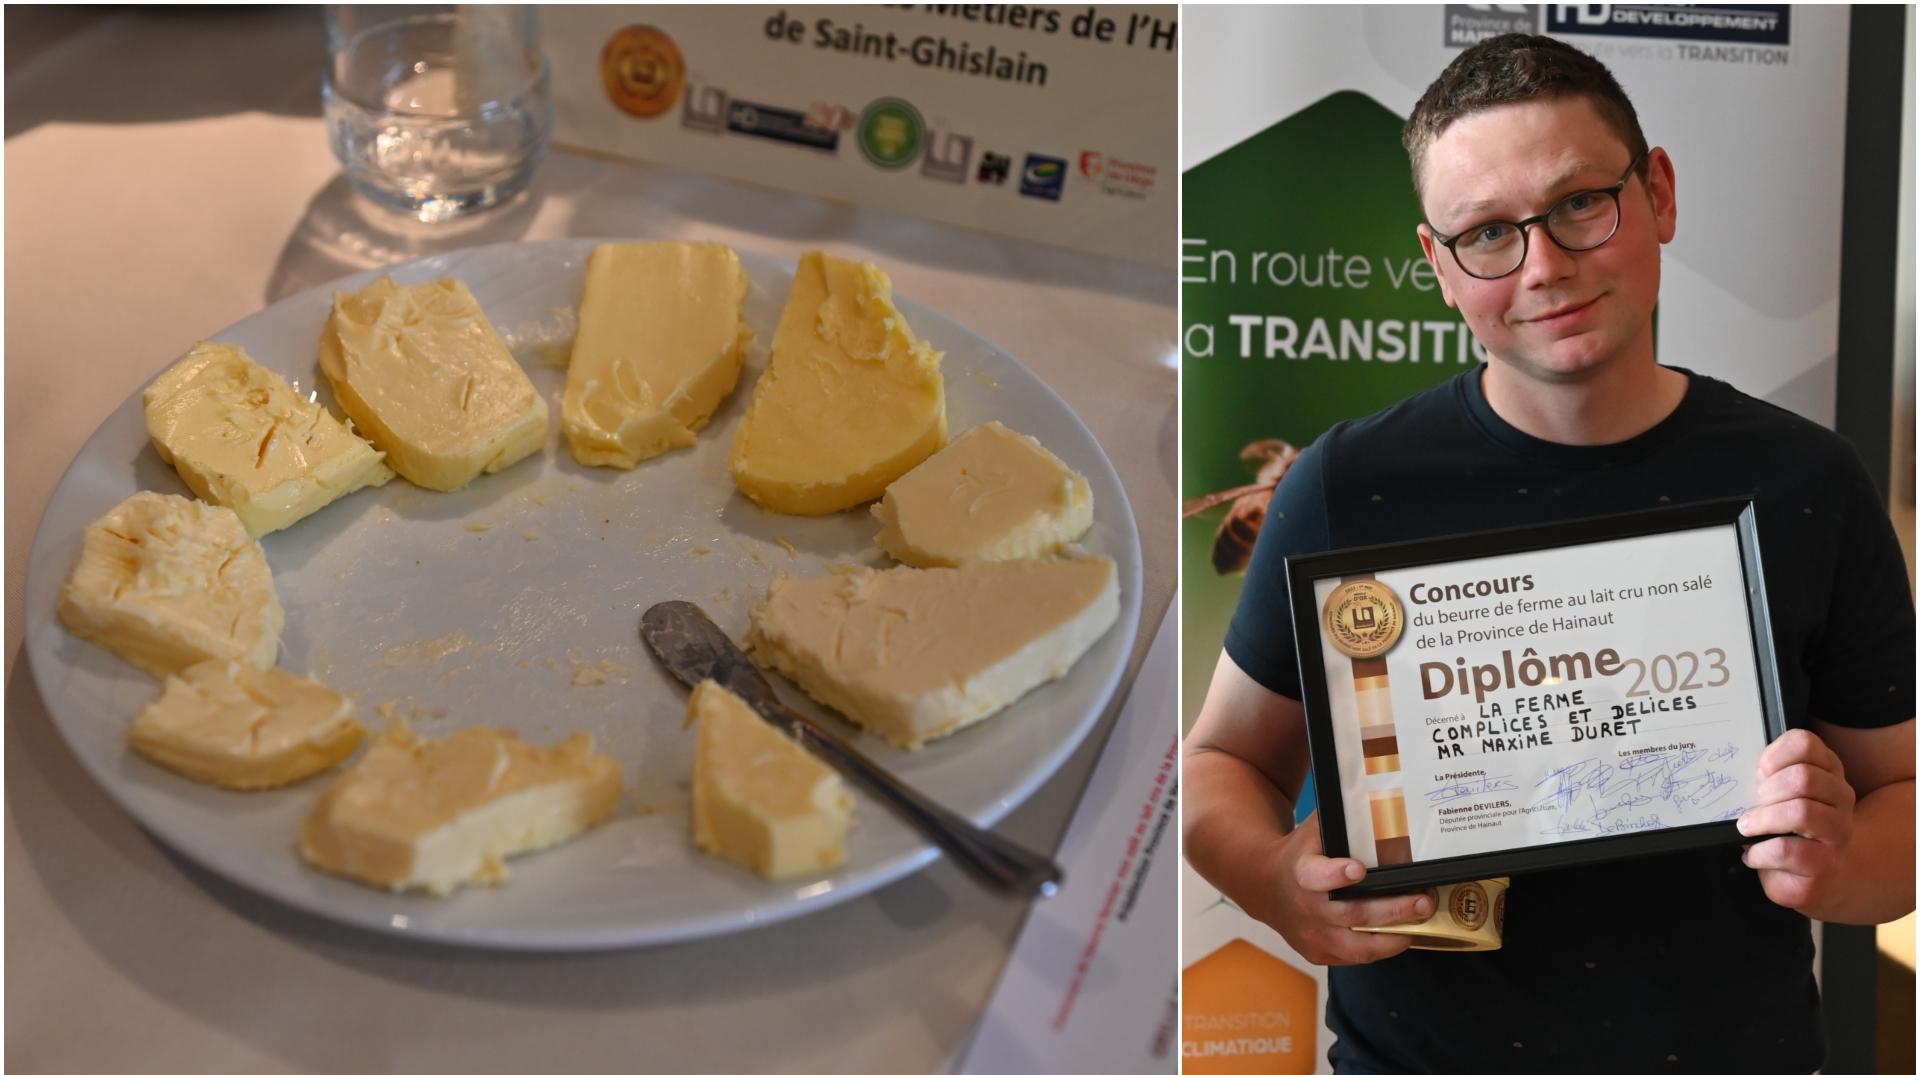 La Ferme Complices et Délices de Graty remporte le concours du beurre de ferme du Hainaut